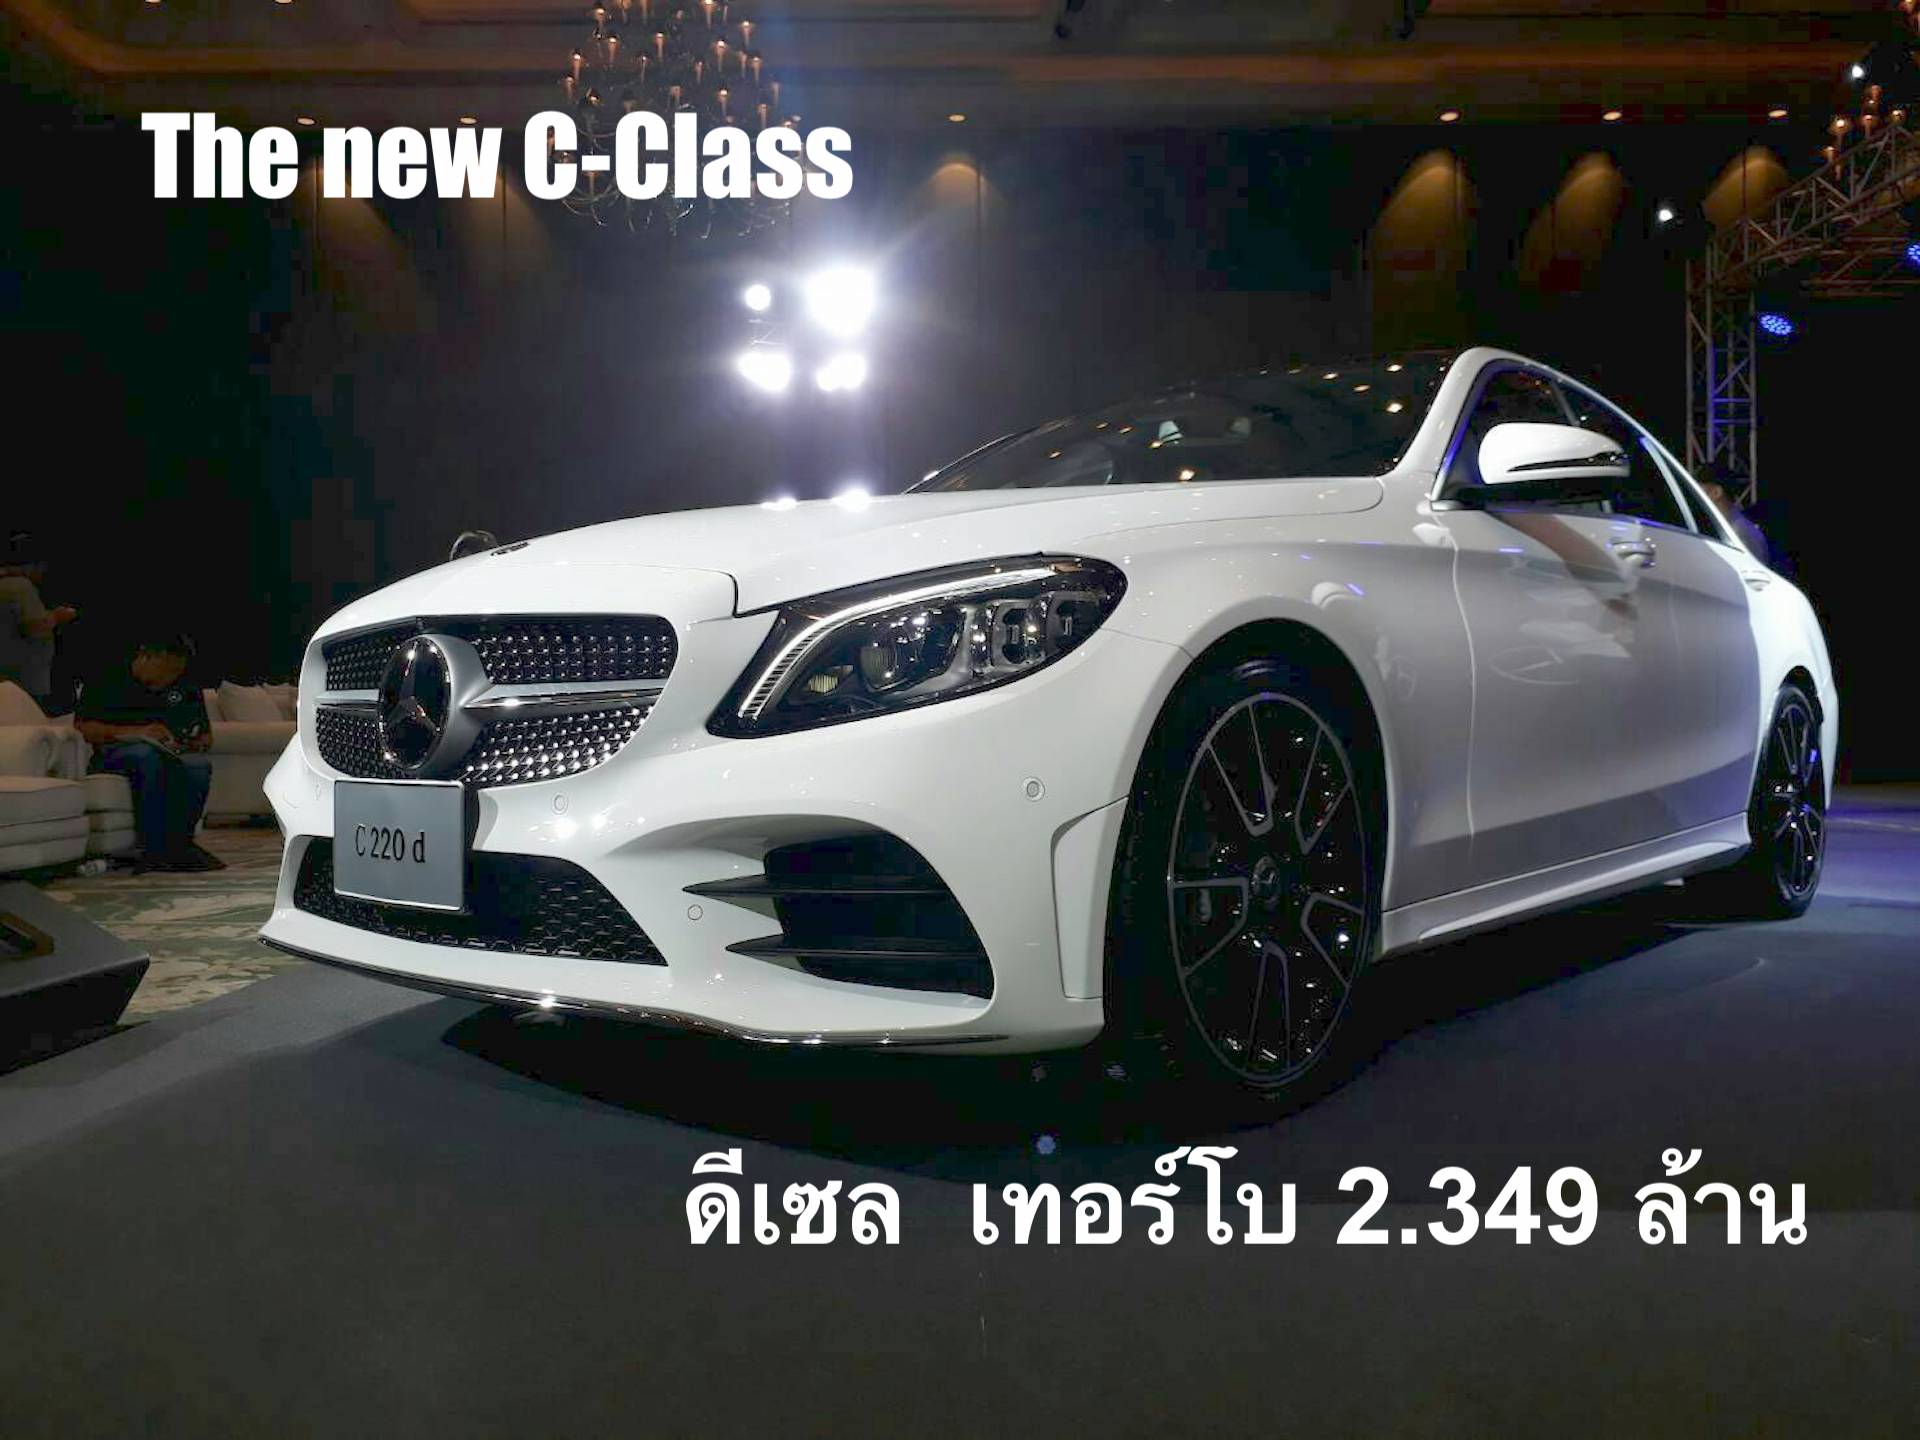 เมอร์เซเดส-เบนซ์ เปิดตัว The new C-Class รุ่นประกอบในประเทศ ที่สุดแห่งยนตรกรรมซาลูนอัจฉริยะเจนเนอเรชั่นใหม่ล่าสุด / Mercedes-Benz presents the new C-Class, the Latest LOCAL PRODUCTION Generation of an Intelligent Saloon Family 